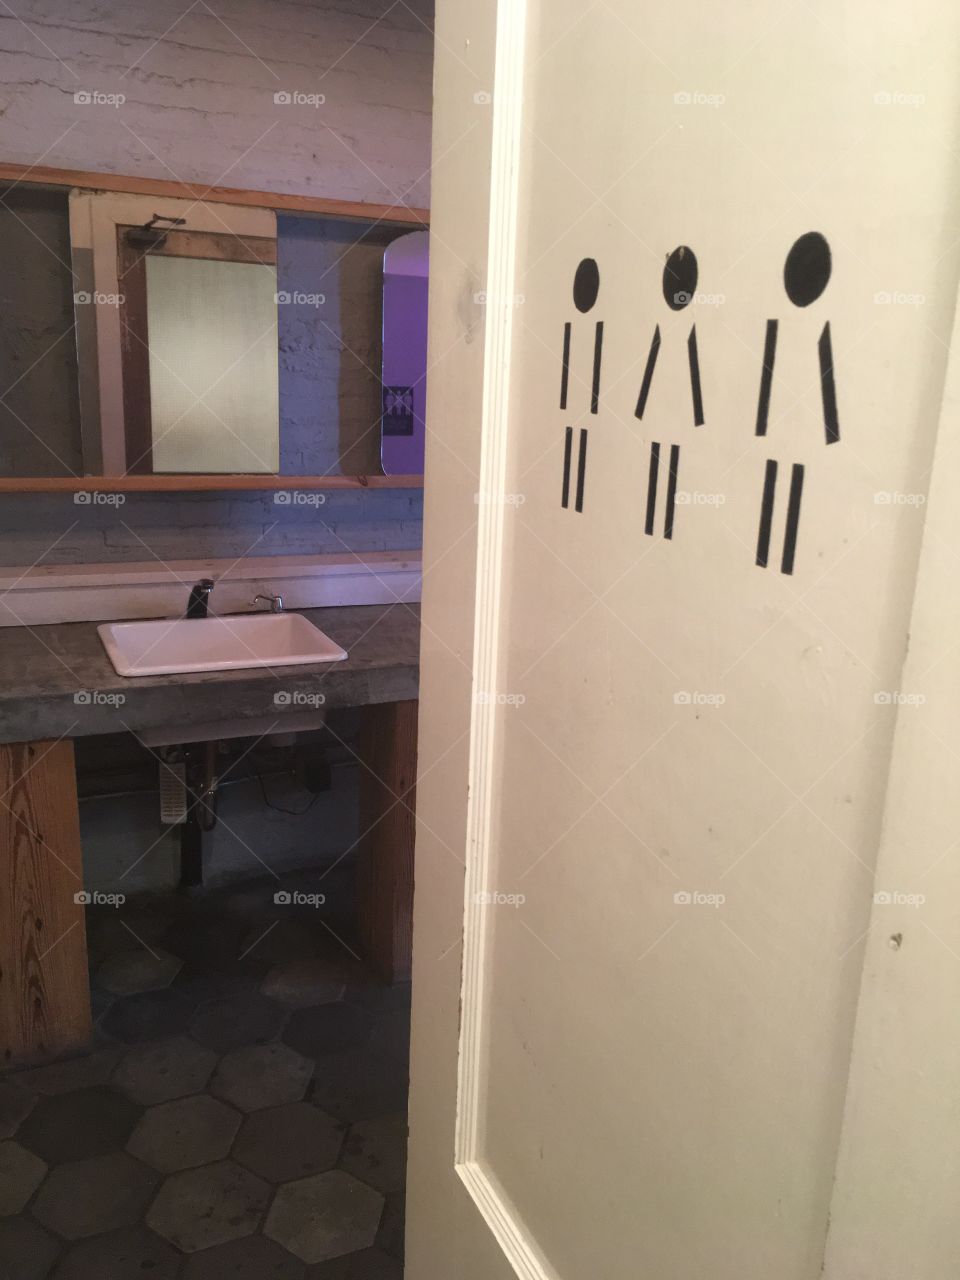 Gender bathrooms - NYC 